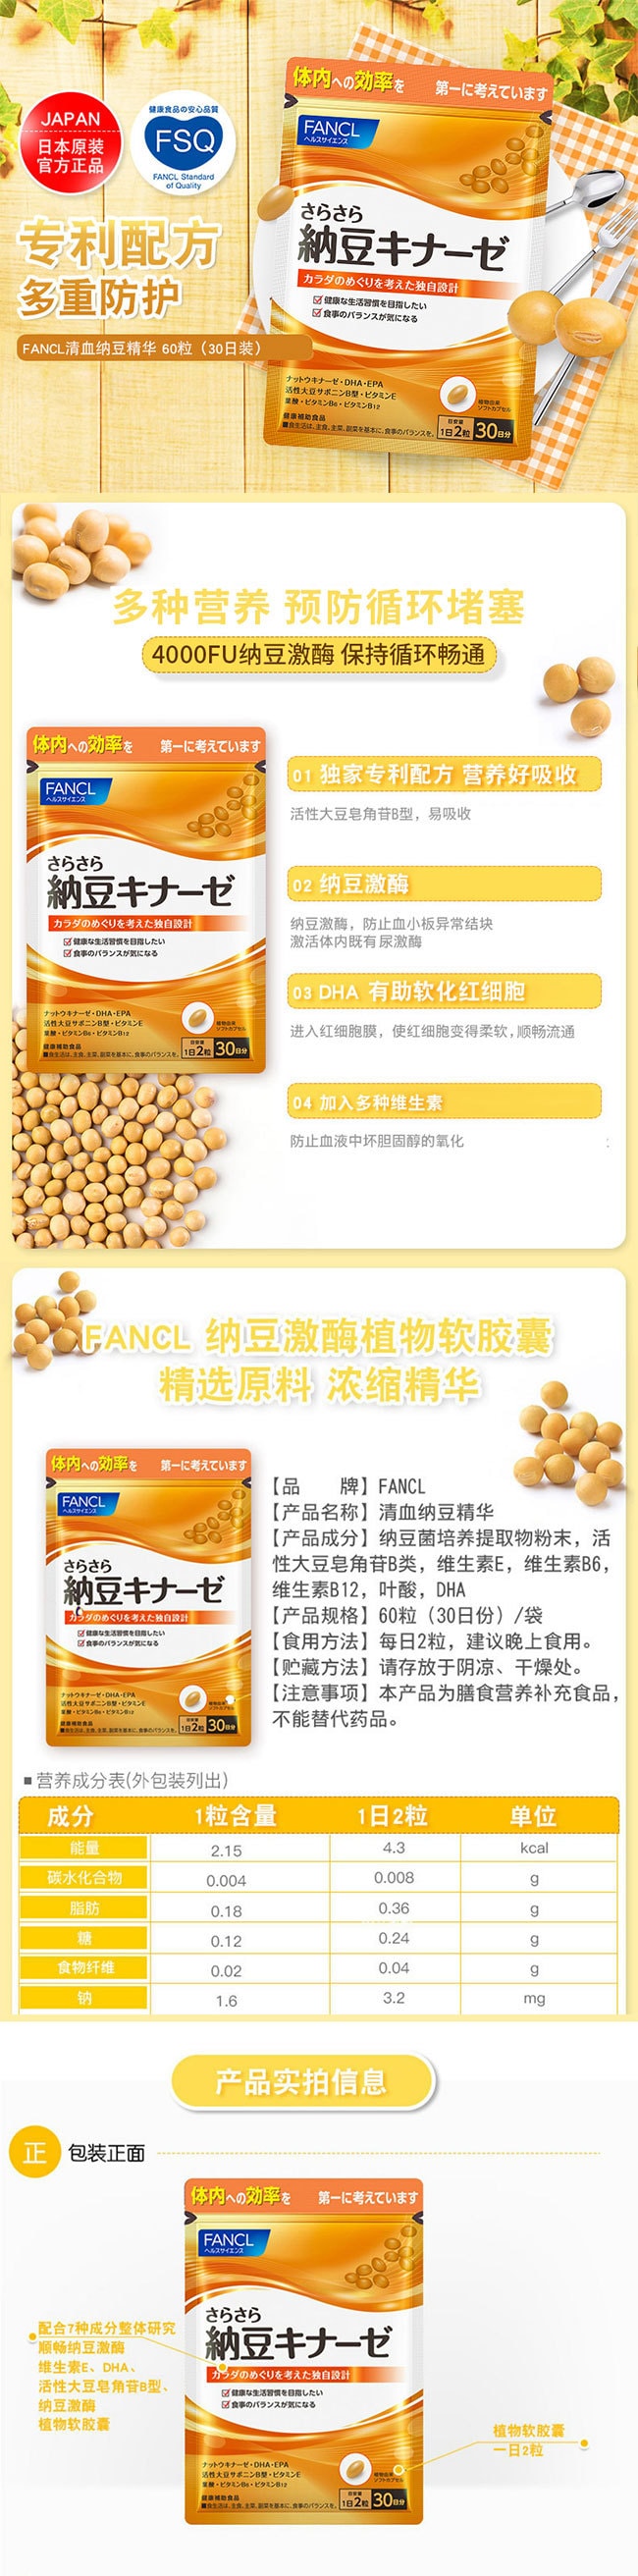 【日本直效郵件】FANCL芳珂 納豆激酶營養錠 30日用量 60粒